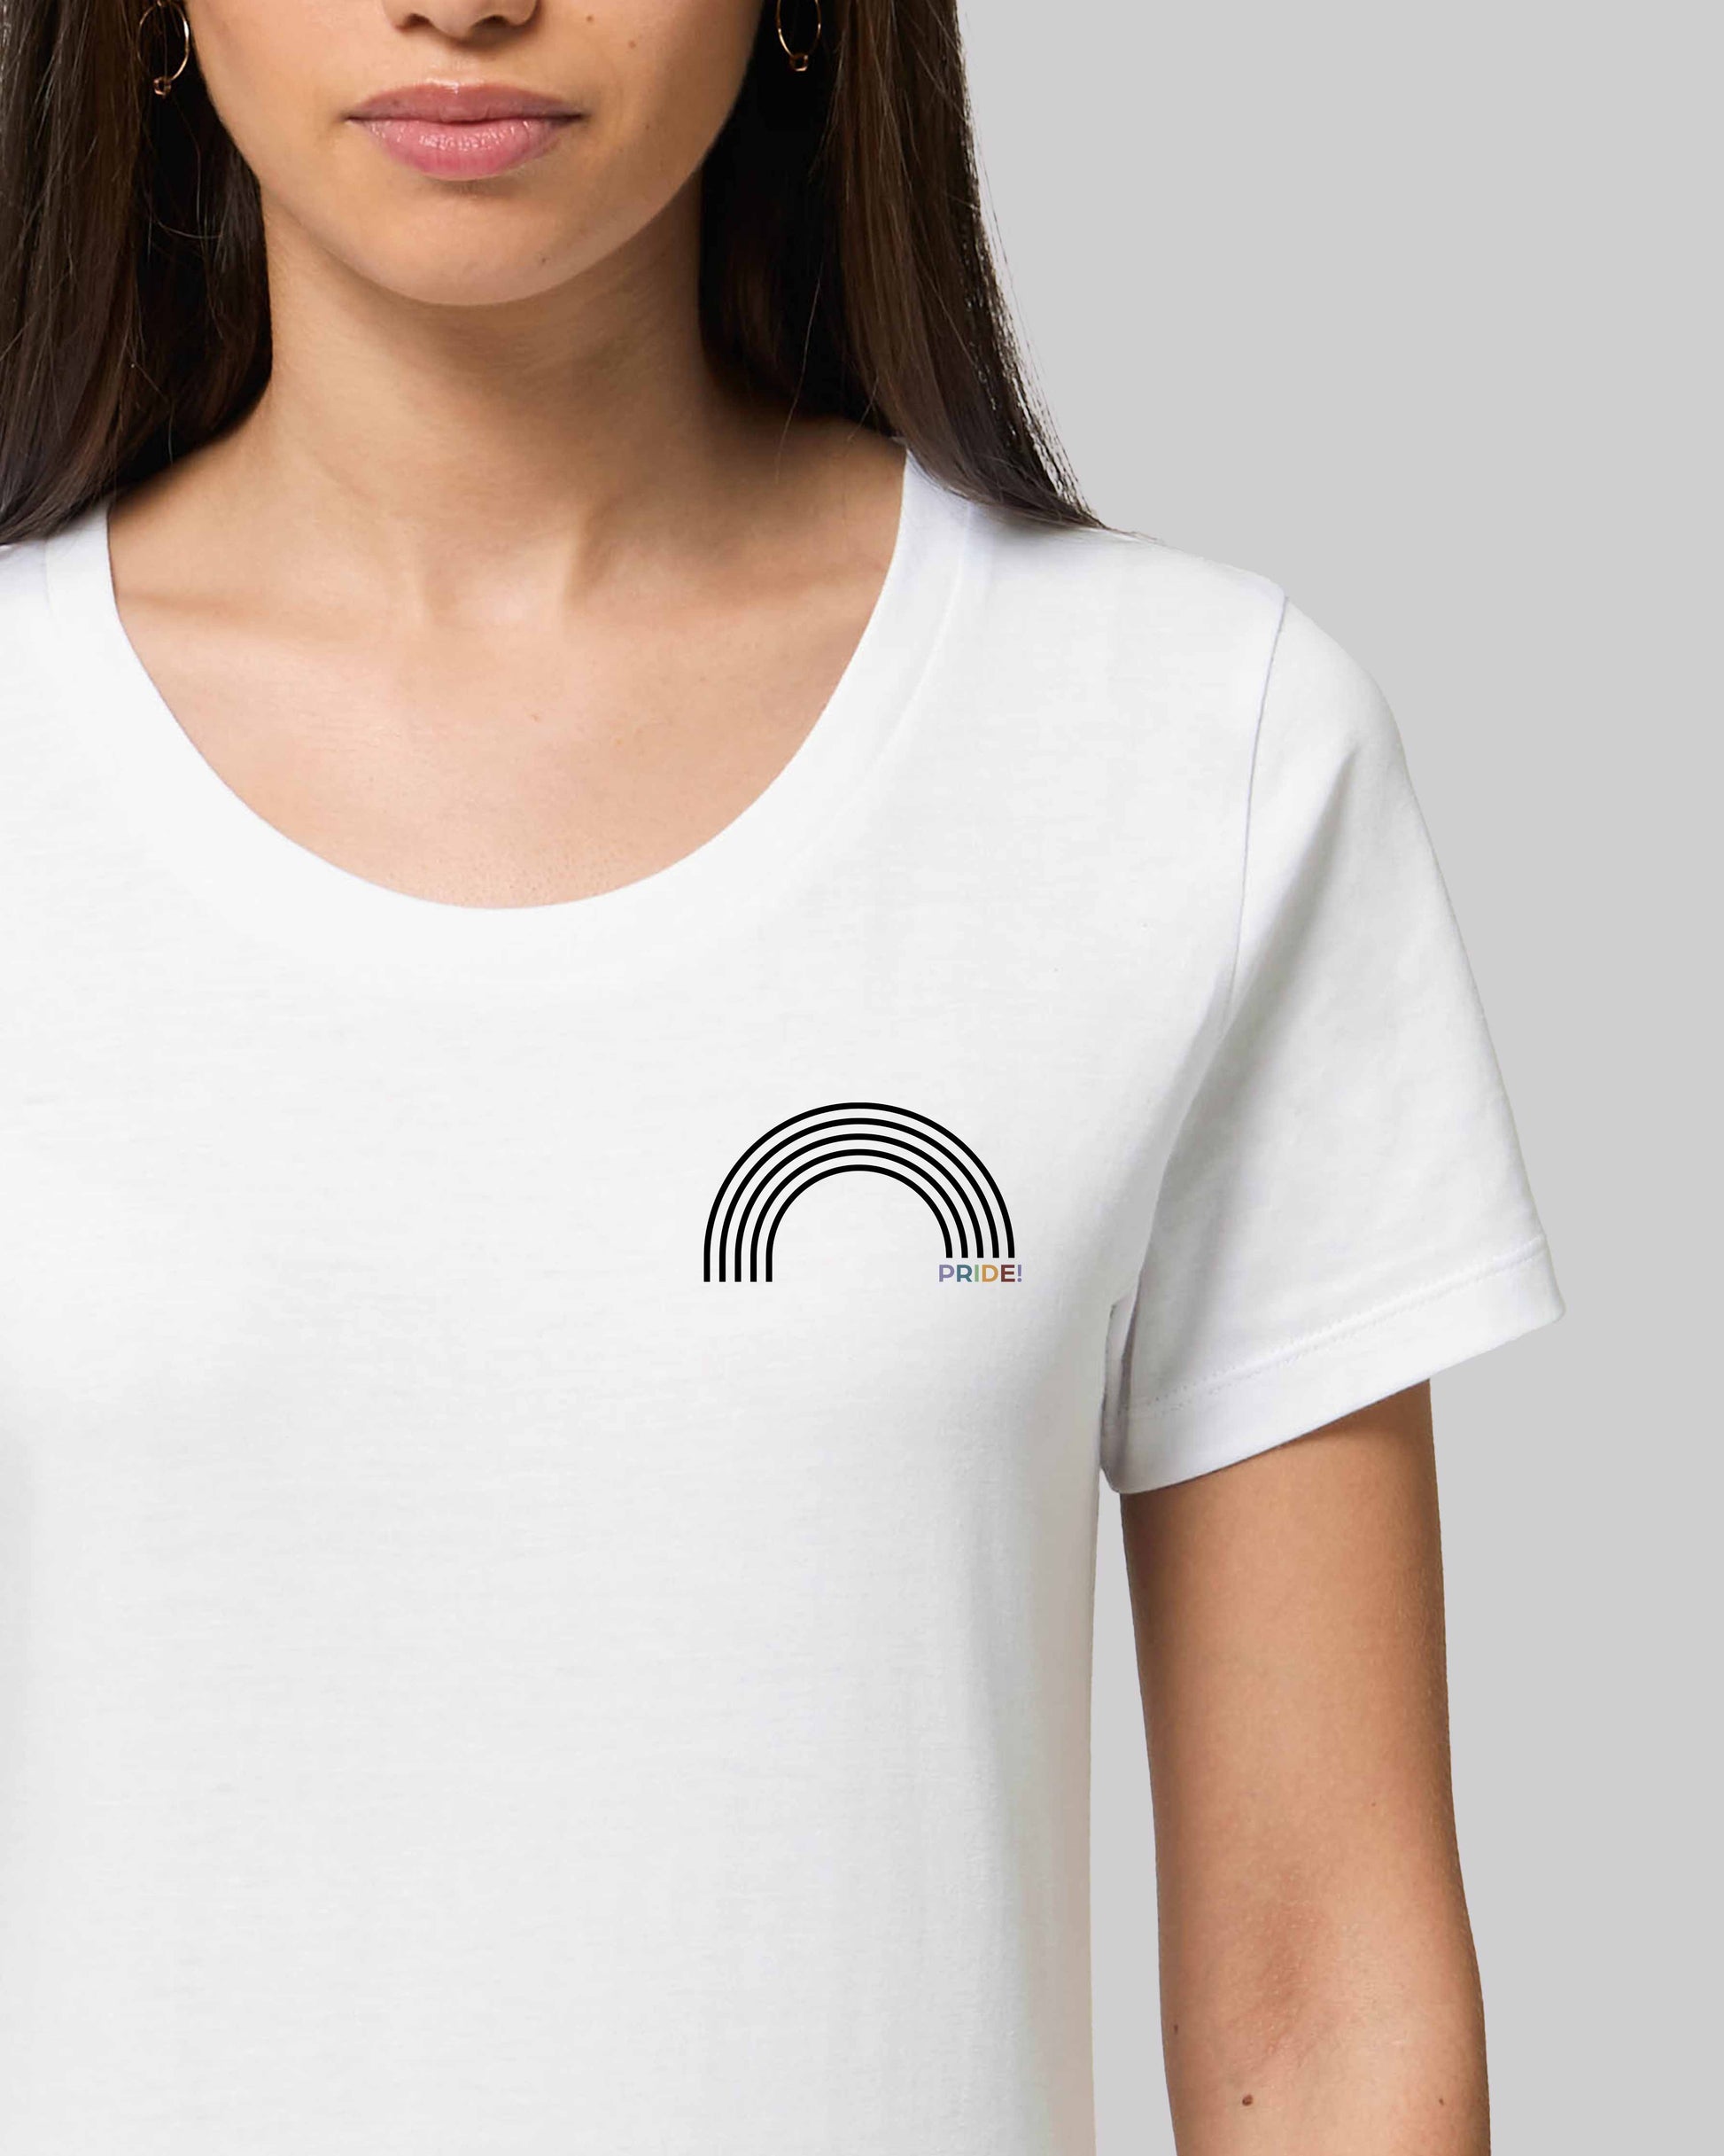 EINHORST® Organic Shirt tailliert in "Weiß" mit dem Motiv "pride Regenbogen" in der Kombination schwarzer Regenbogen mit bunter Schrift, Bild von weiblicher Person mit Shirt